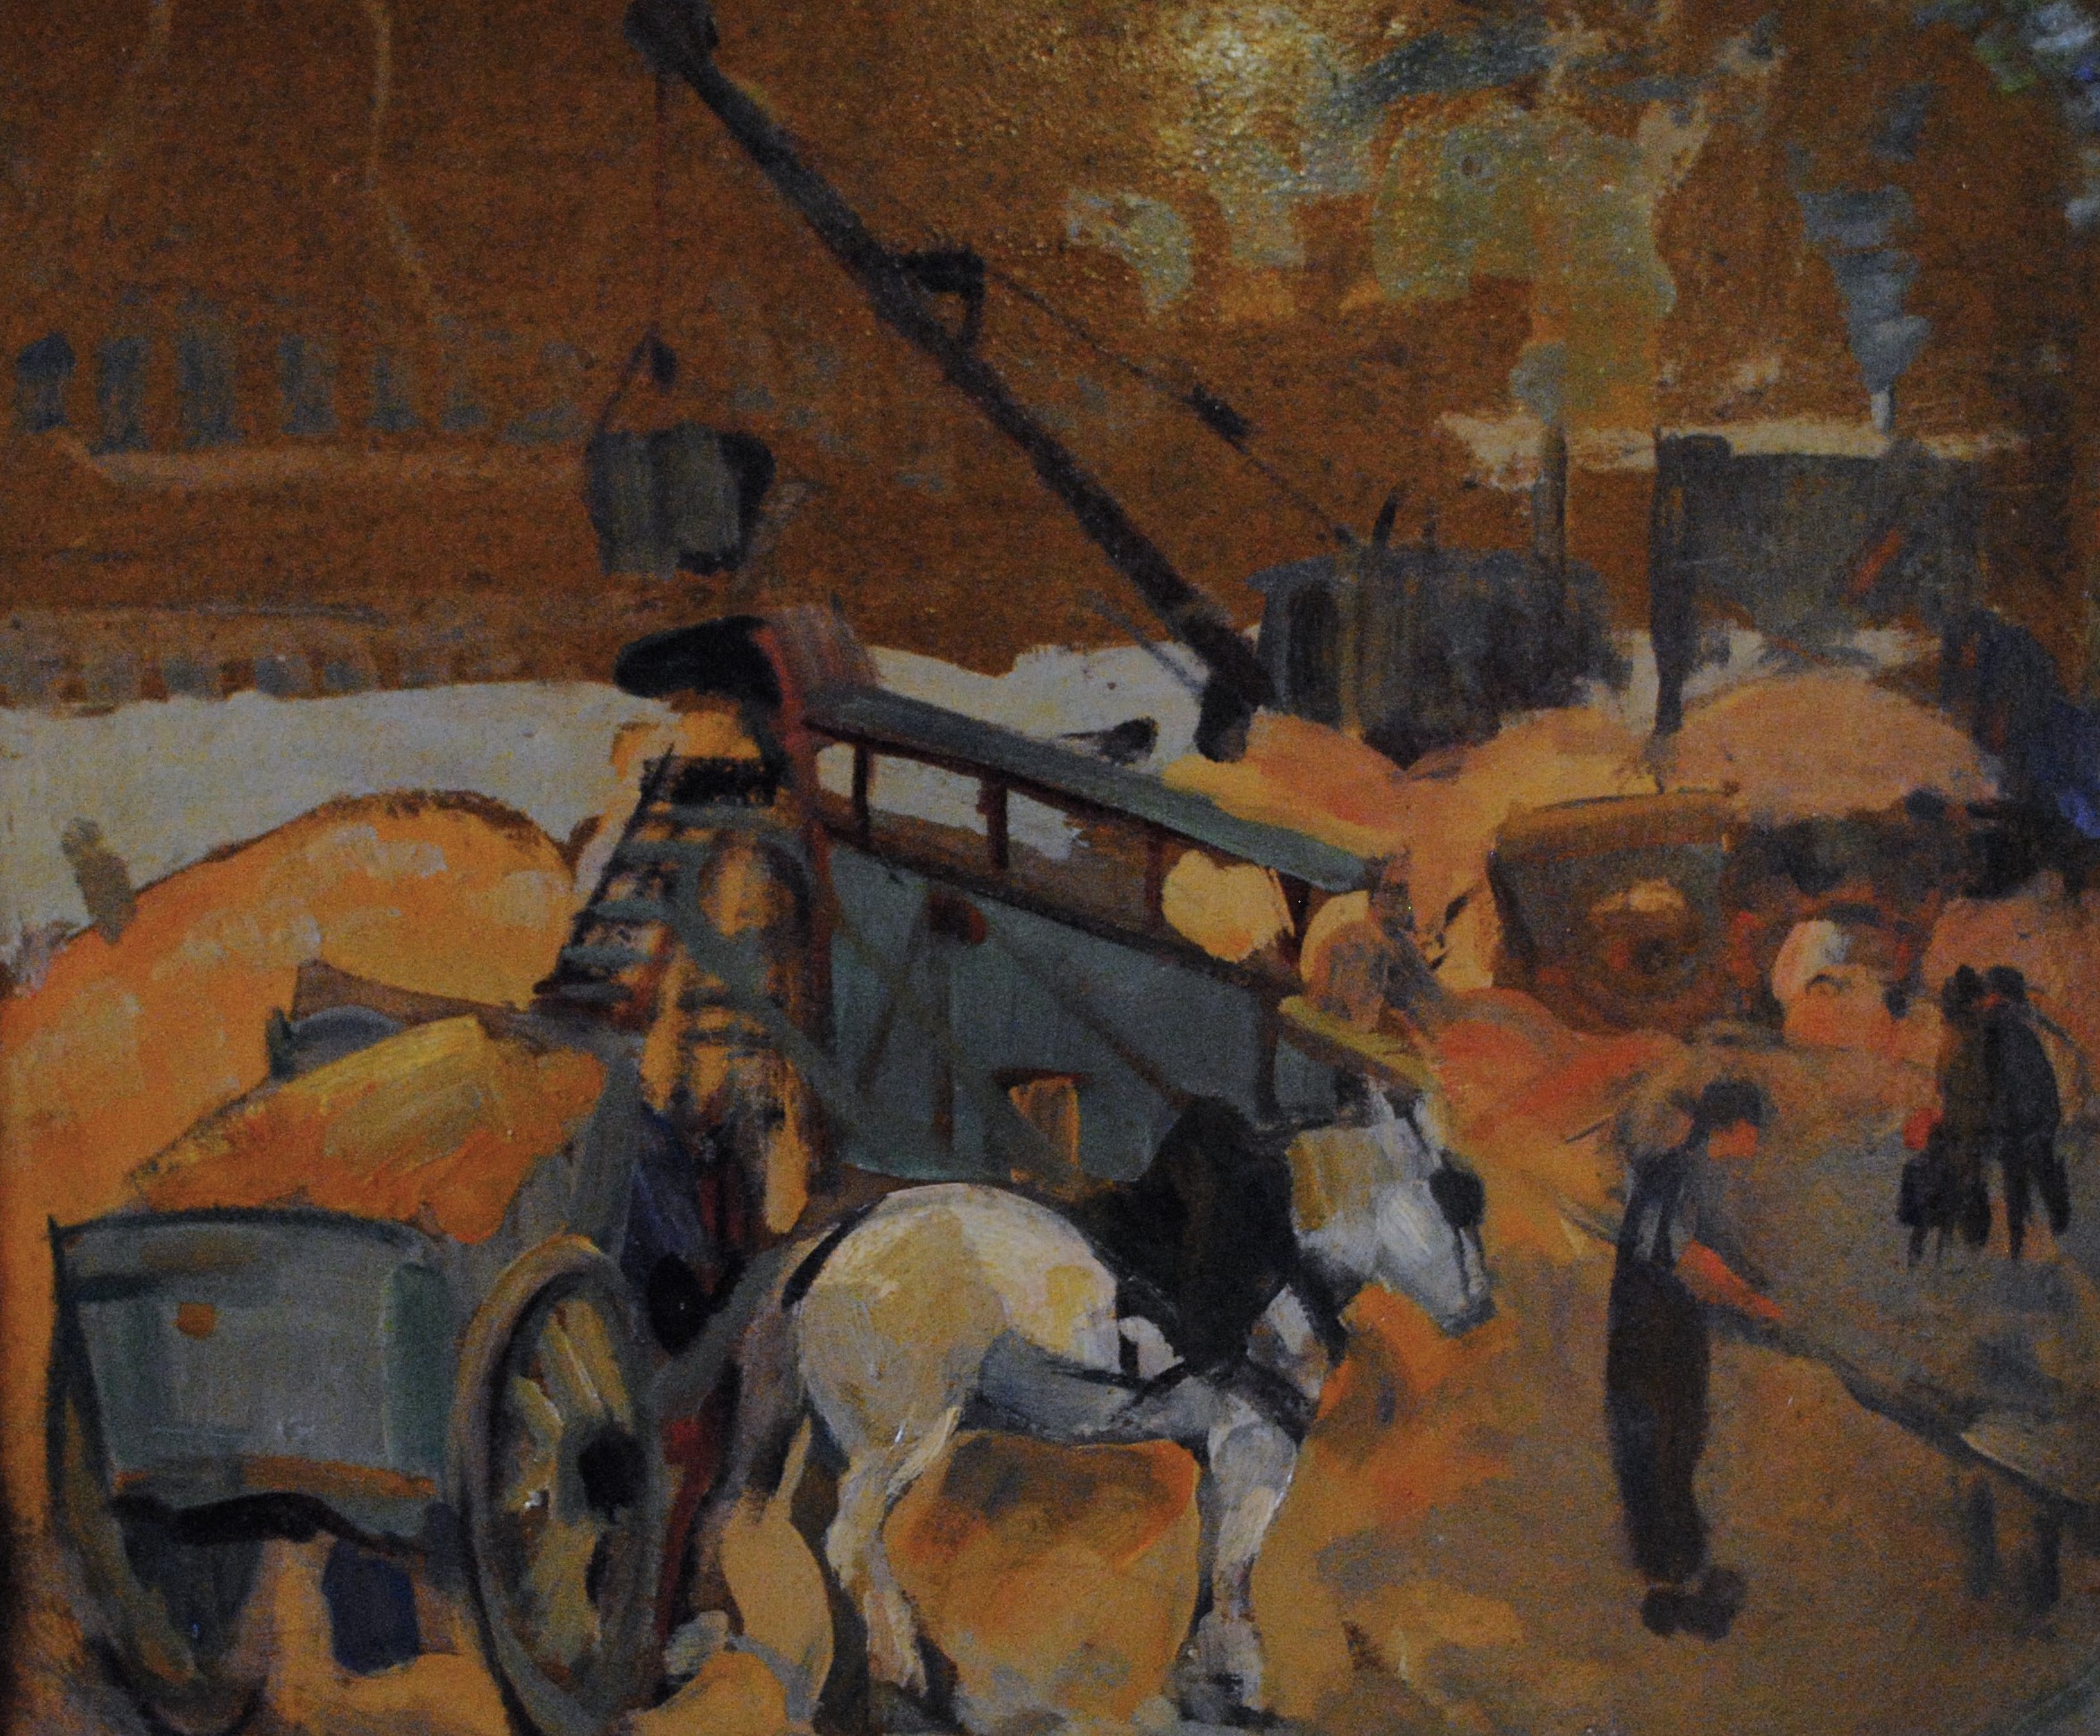 Pintura de José Manaut titulada Sacando arena del Sena, París, 1923. Óleo sobre cartón.